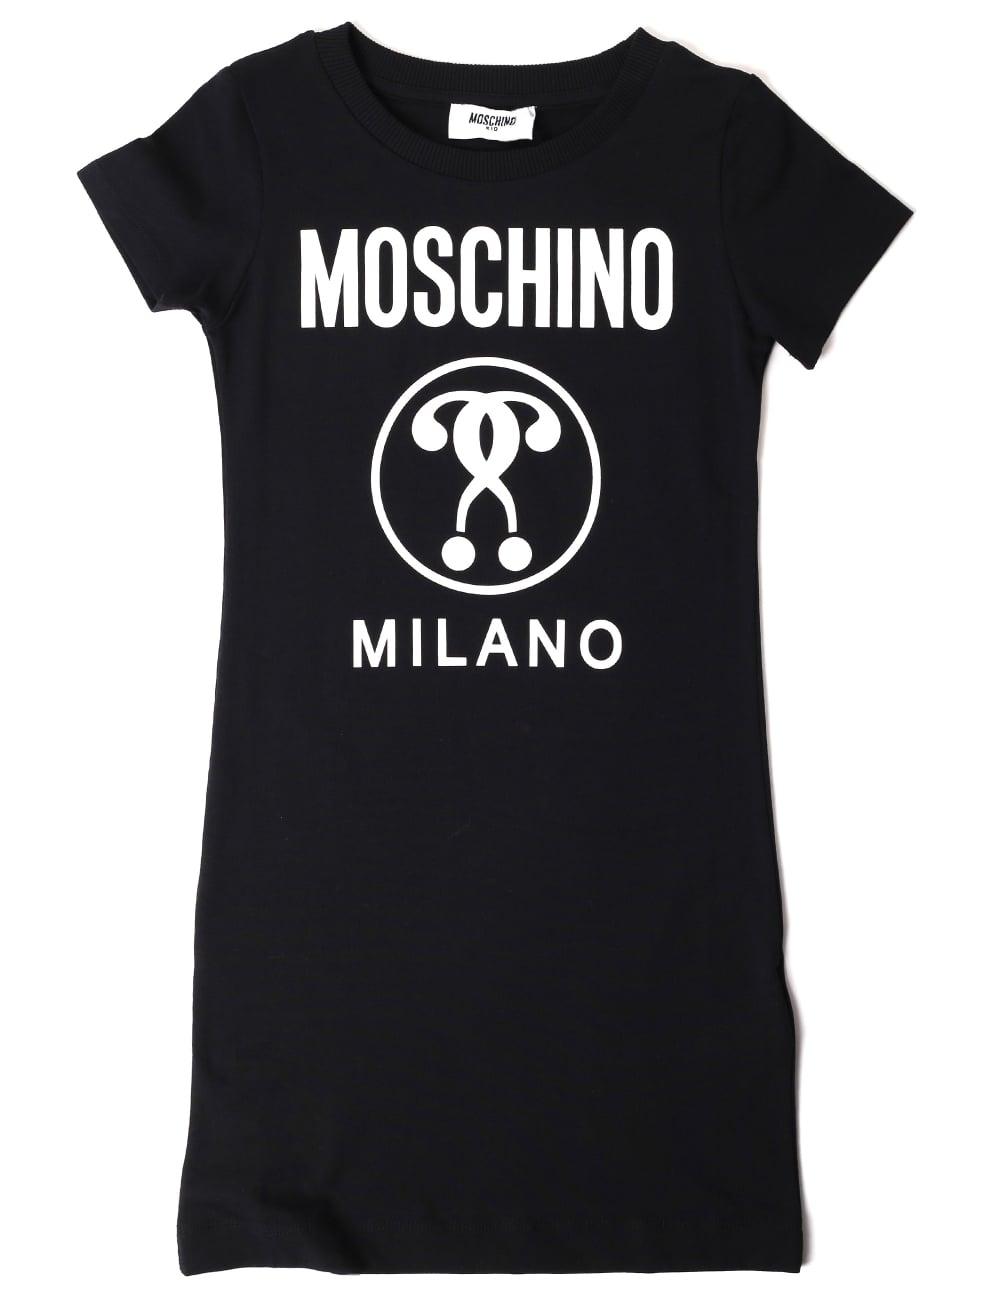 Moschino Milano Logo - Moschino Girls Short Sleeve Milano Dress